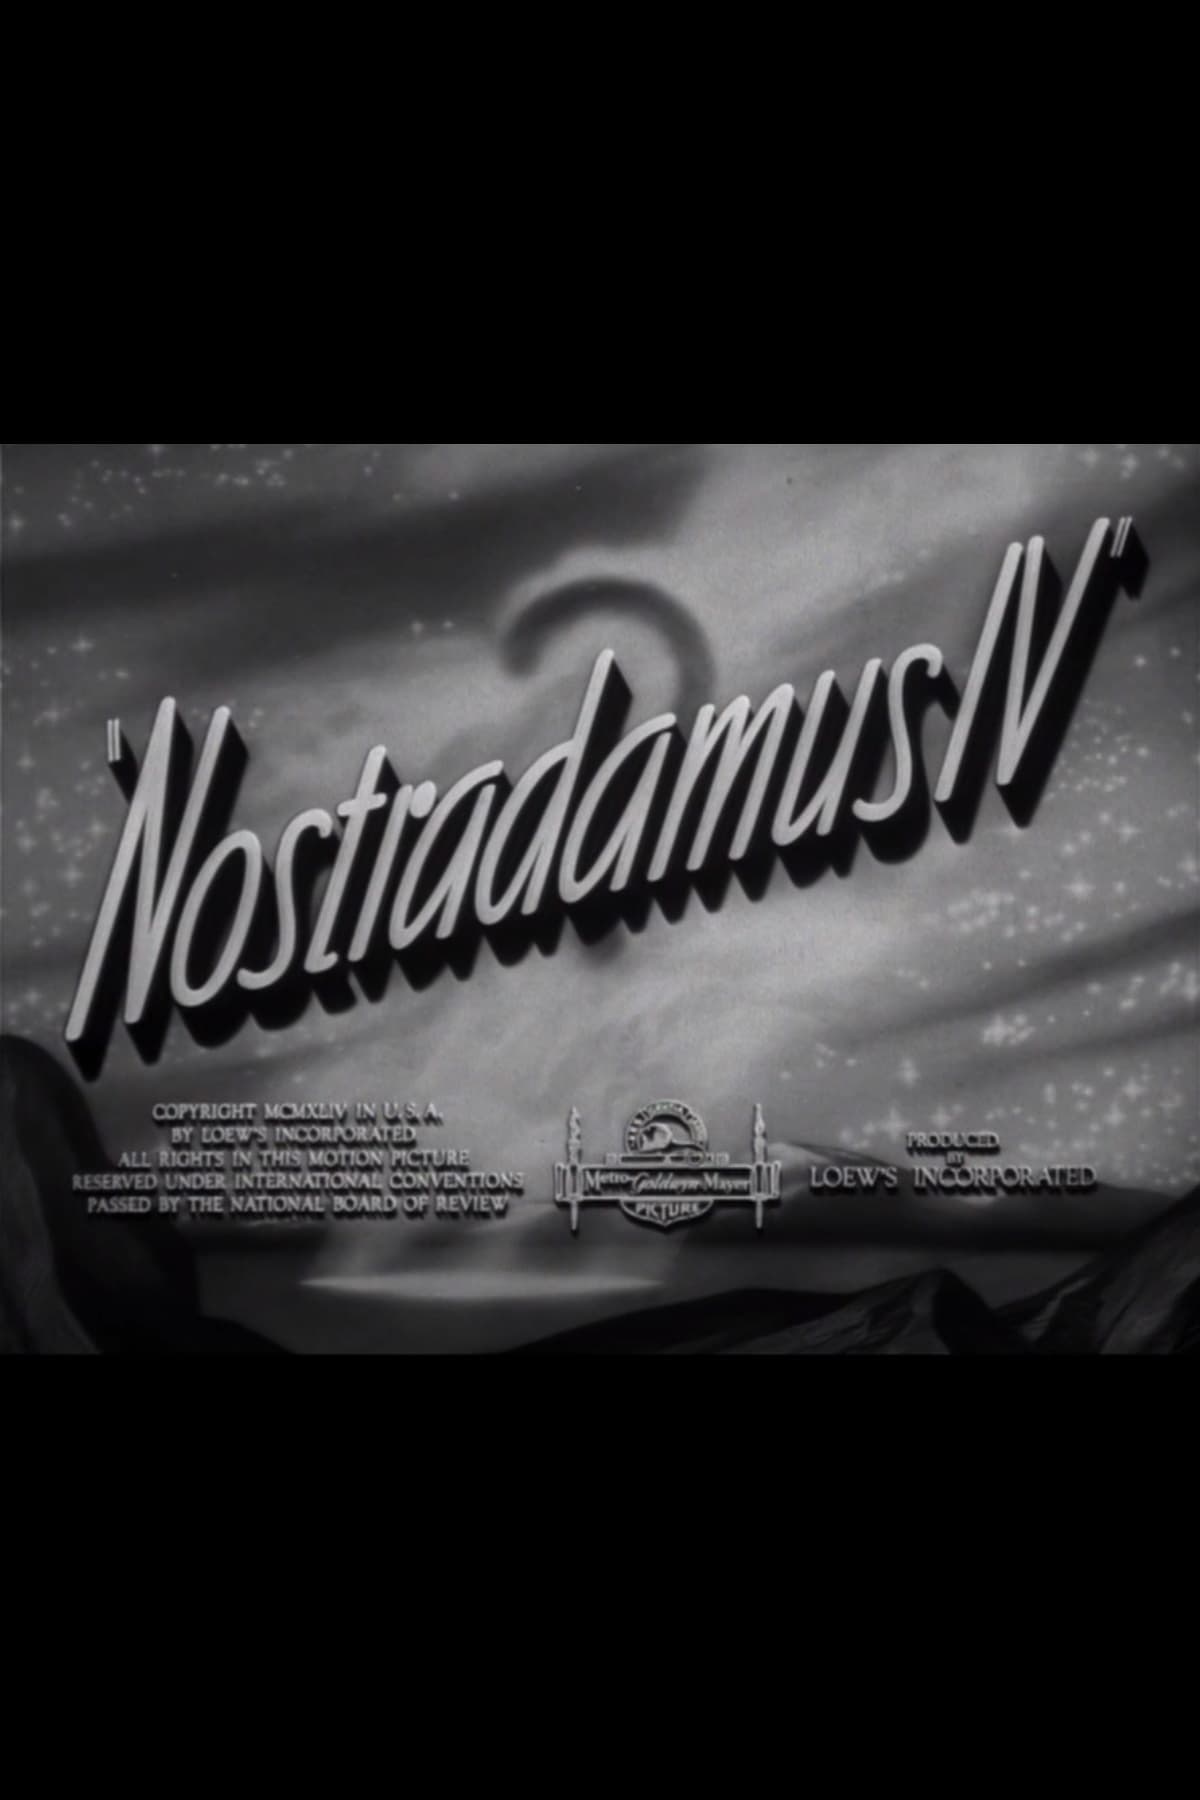 Nostradamus IV (1944)